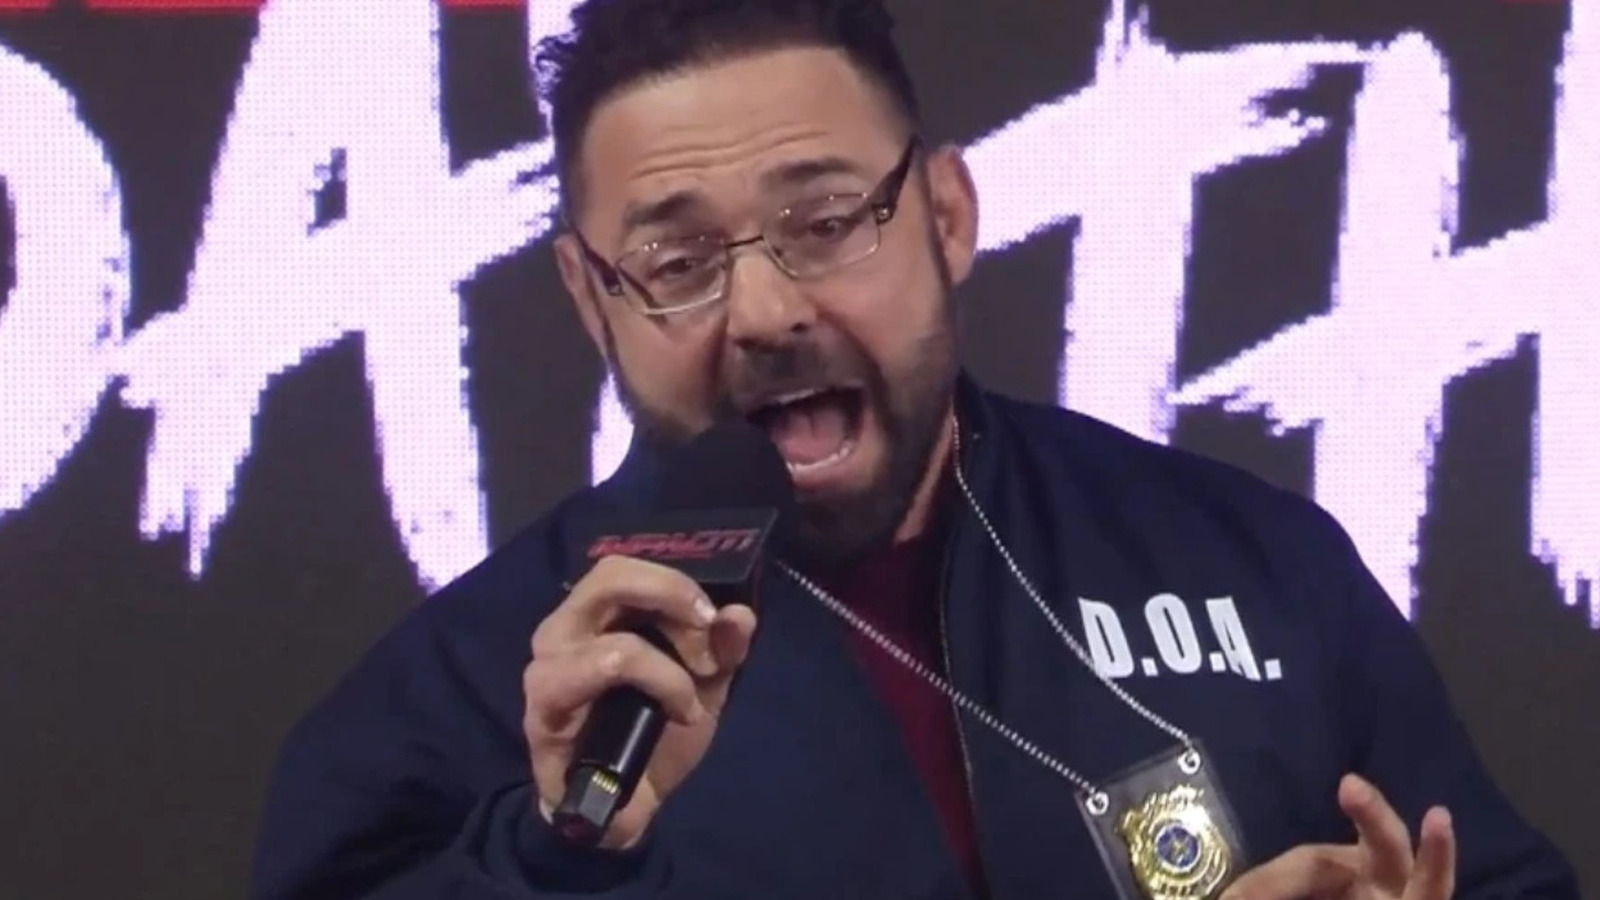 Santino Marella explica cómo puede usar el nombre de ring fuera de WWE